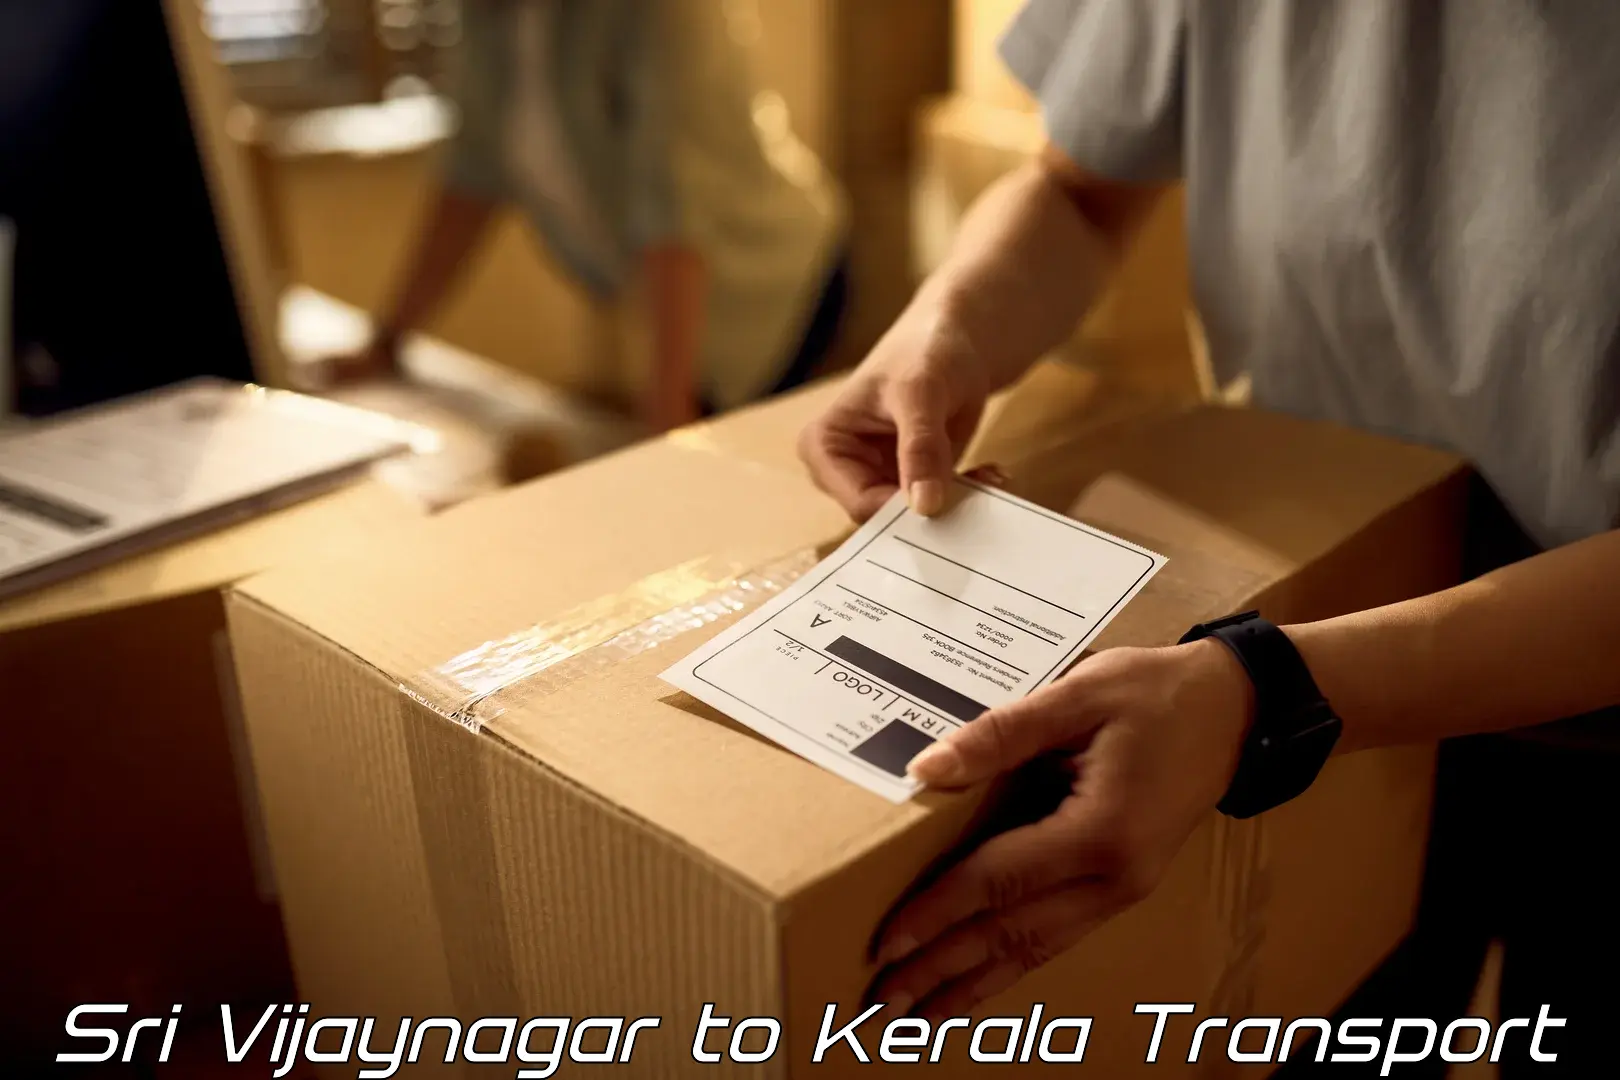 Parcel transport services Sri Vijaynagar to Kerala